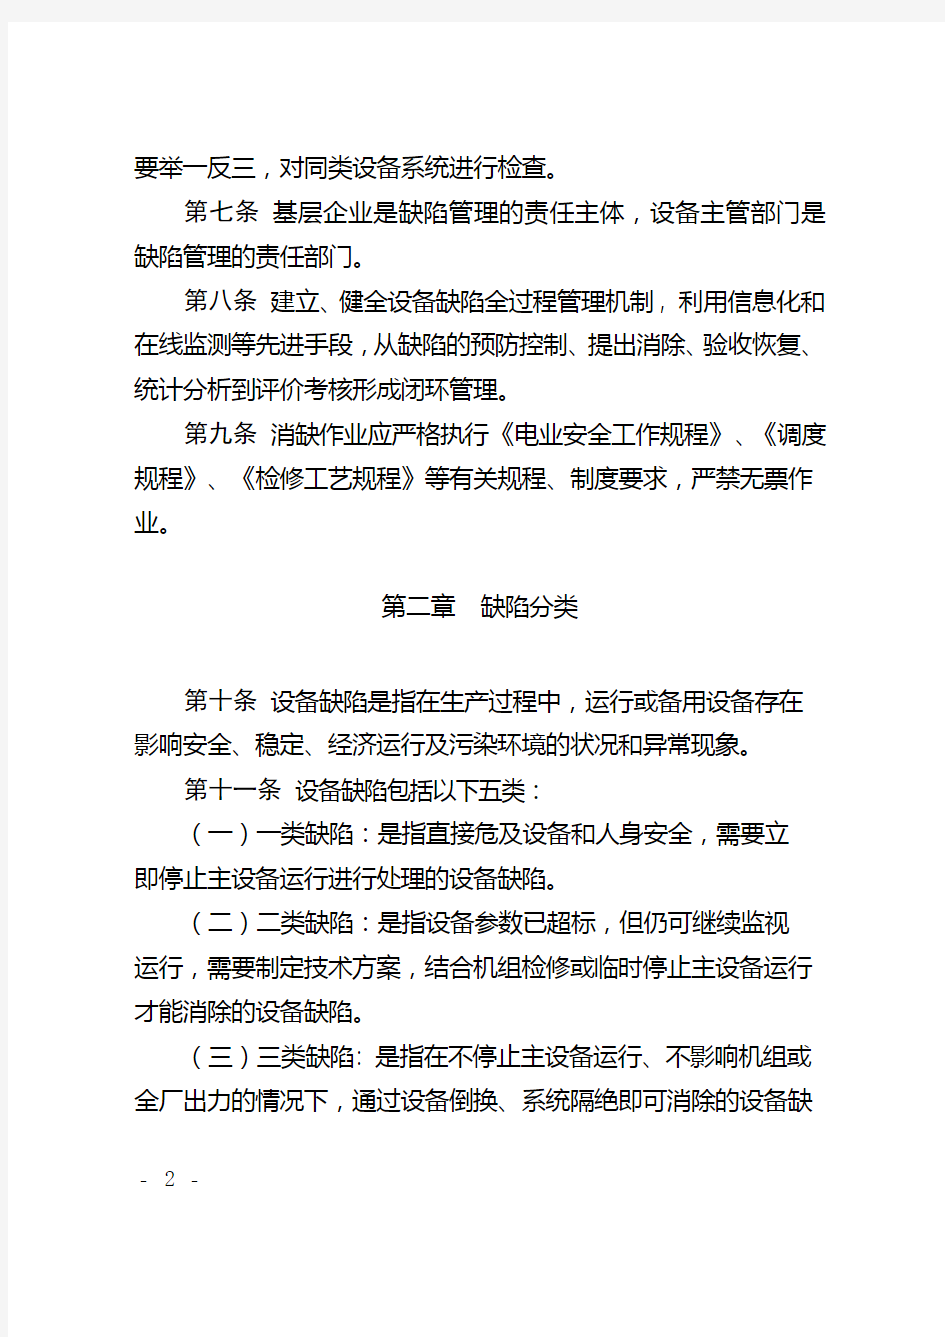 中国大唐集团公司发电企业设备缺陷管理办法(试行)